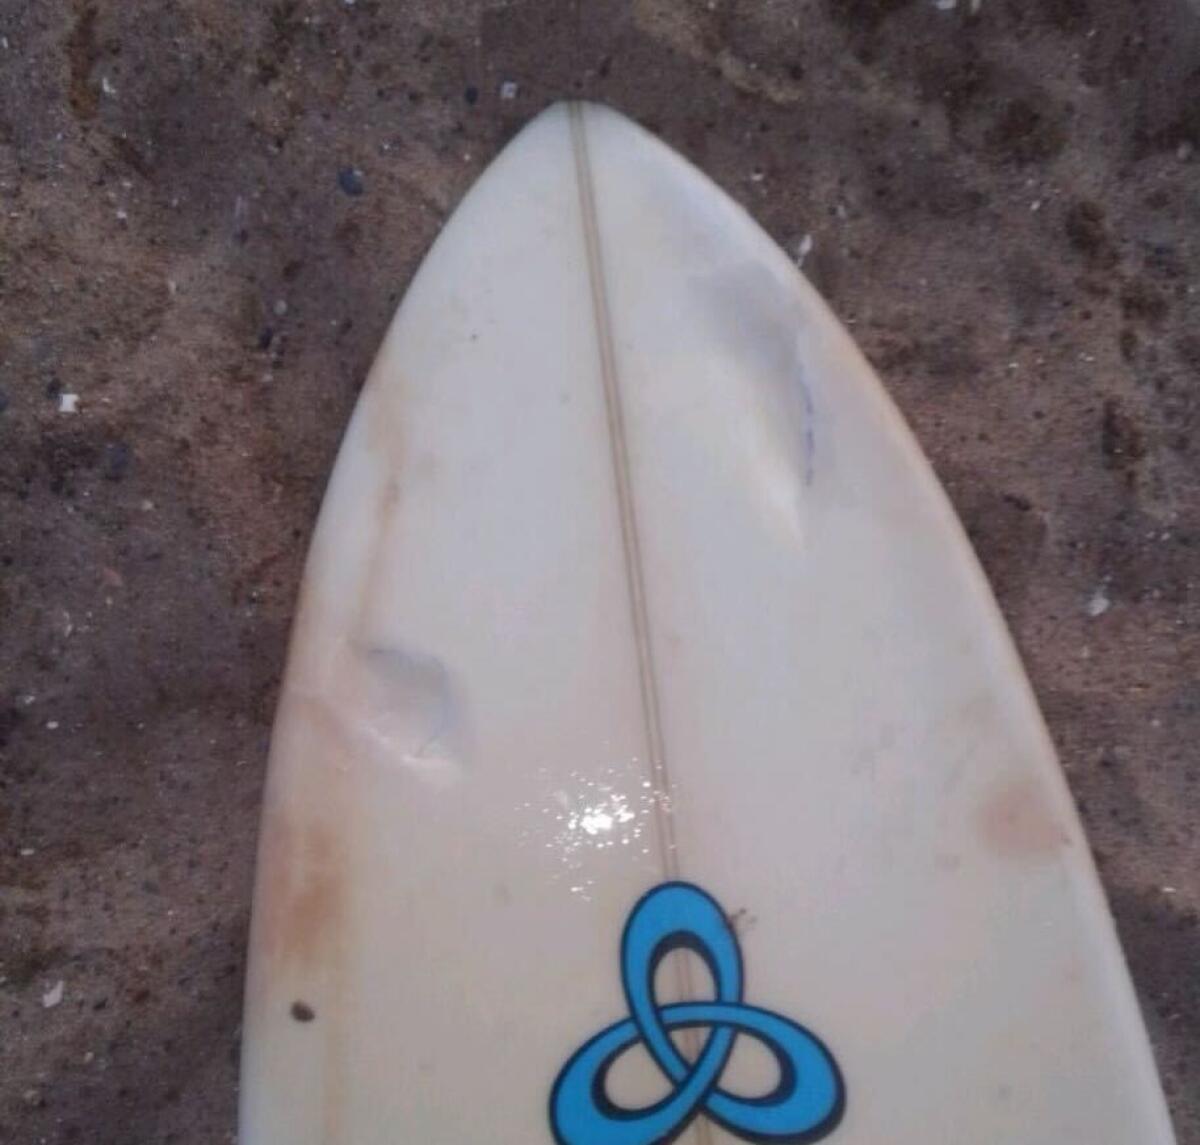 A damaged surfboard